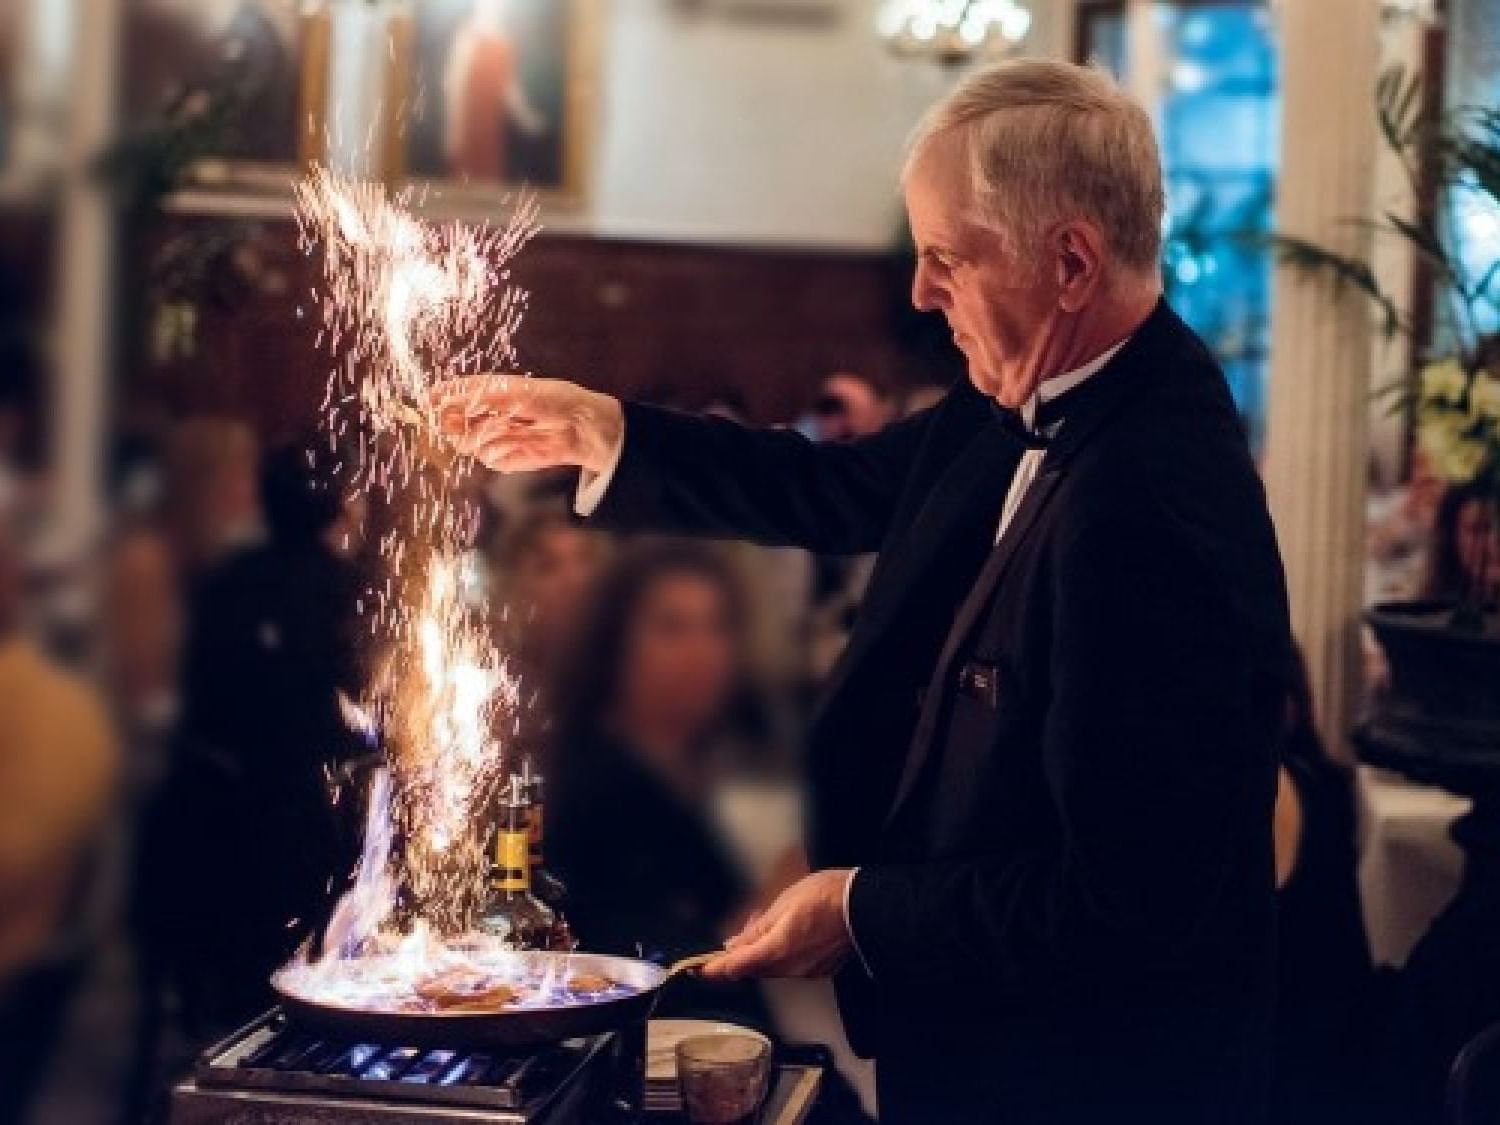 A waiter flambéing a dish at Arnaud's near St. James Hotel